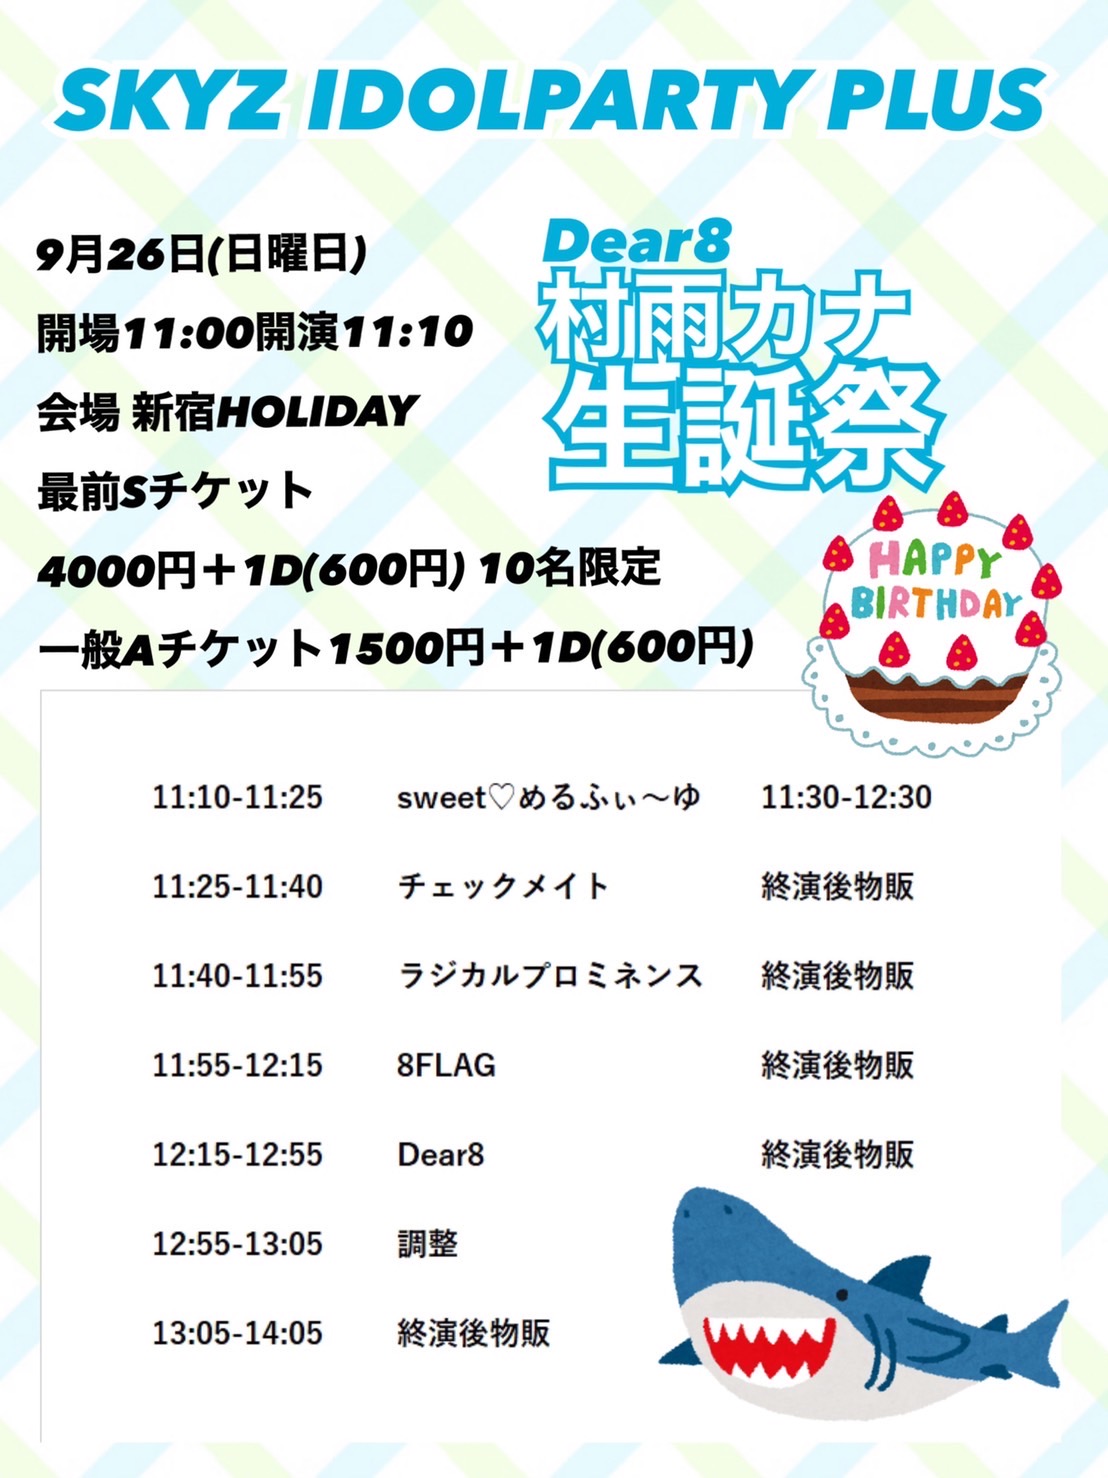 1部 Skyz Idol Party Plus Dear8村雨カナ生誕祭のチケット情報 予約 購入 販売 ライヴポケット